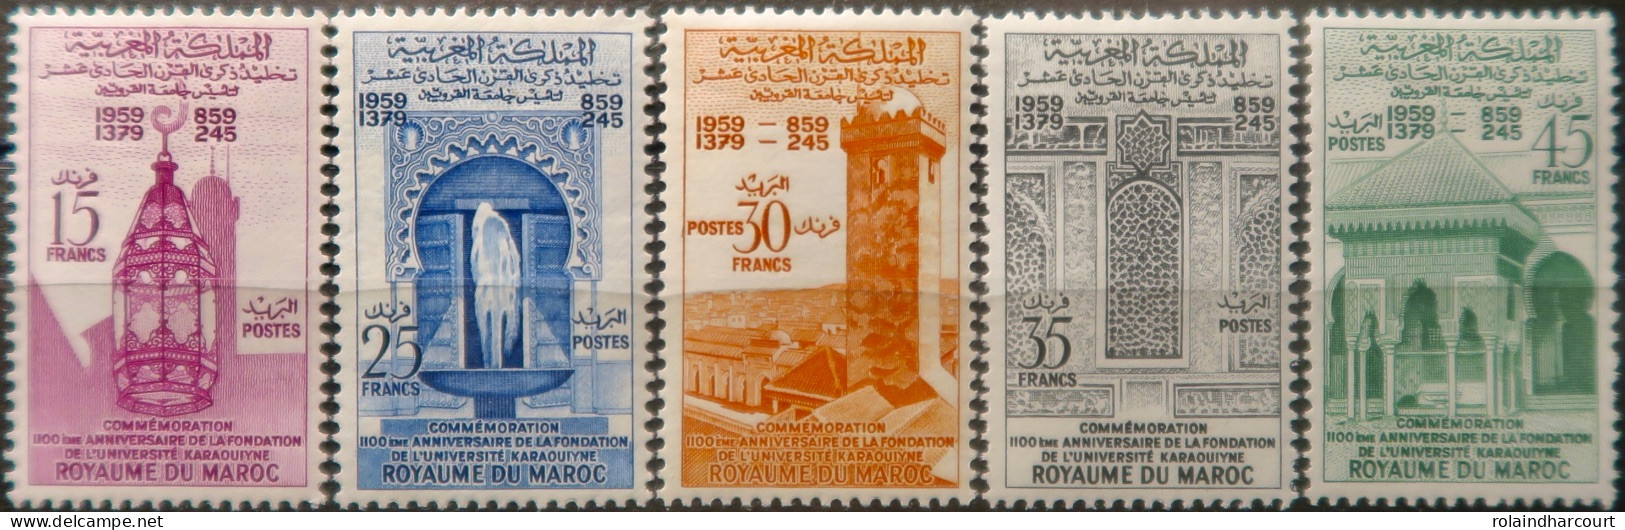 LP3844/2238 - MAROC - 1960 - SERIE COMPLETE - N°405 à 409 NEUFS* - Marocco (1956-...)